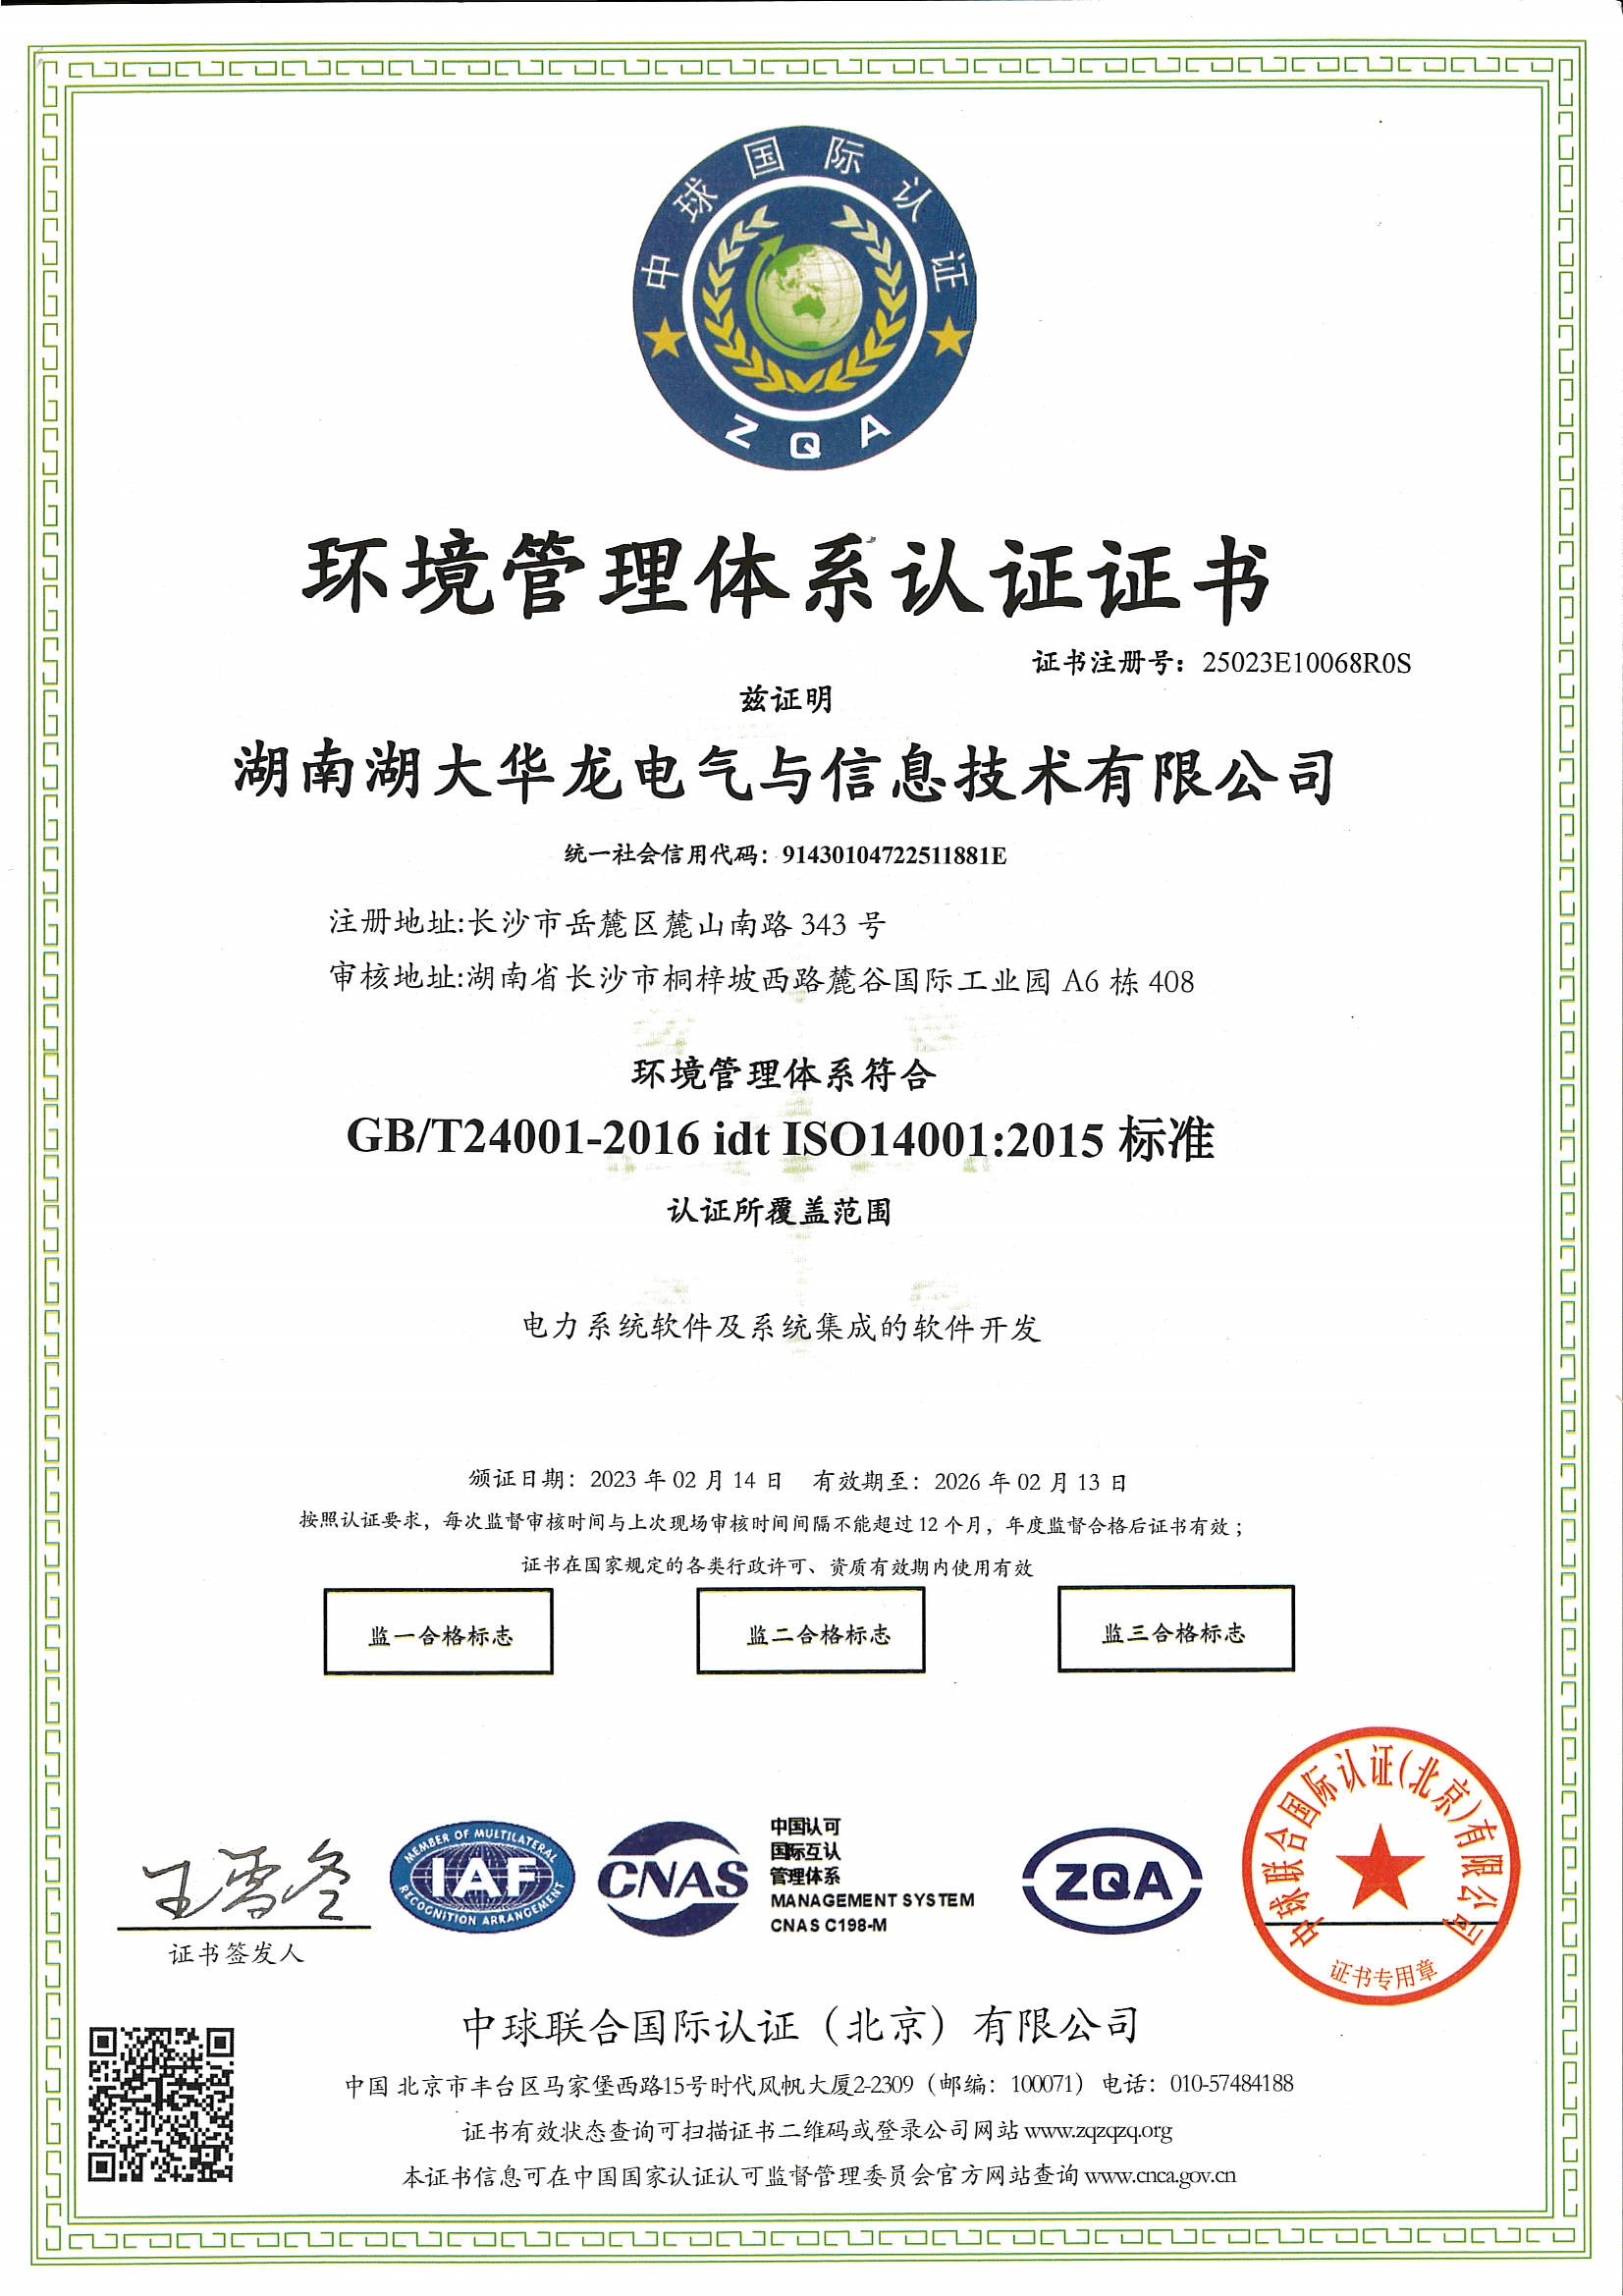 14001环境管理体系证书中文版.jpg